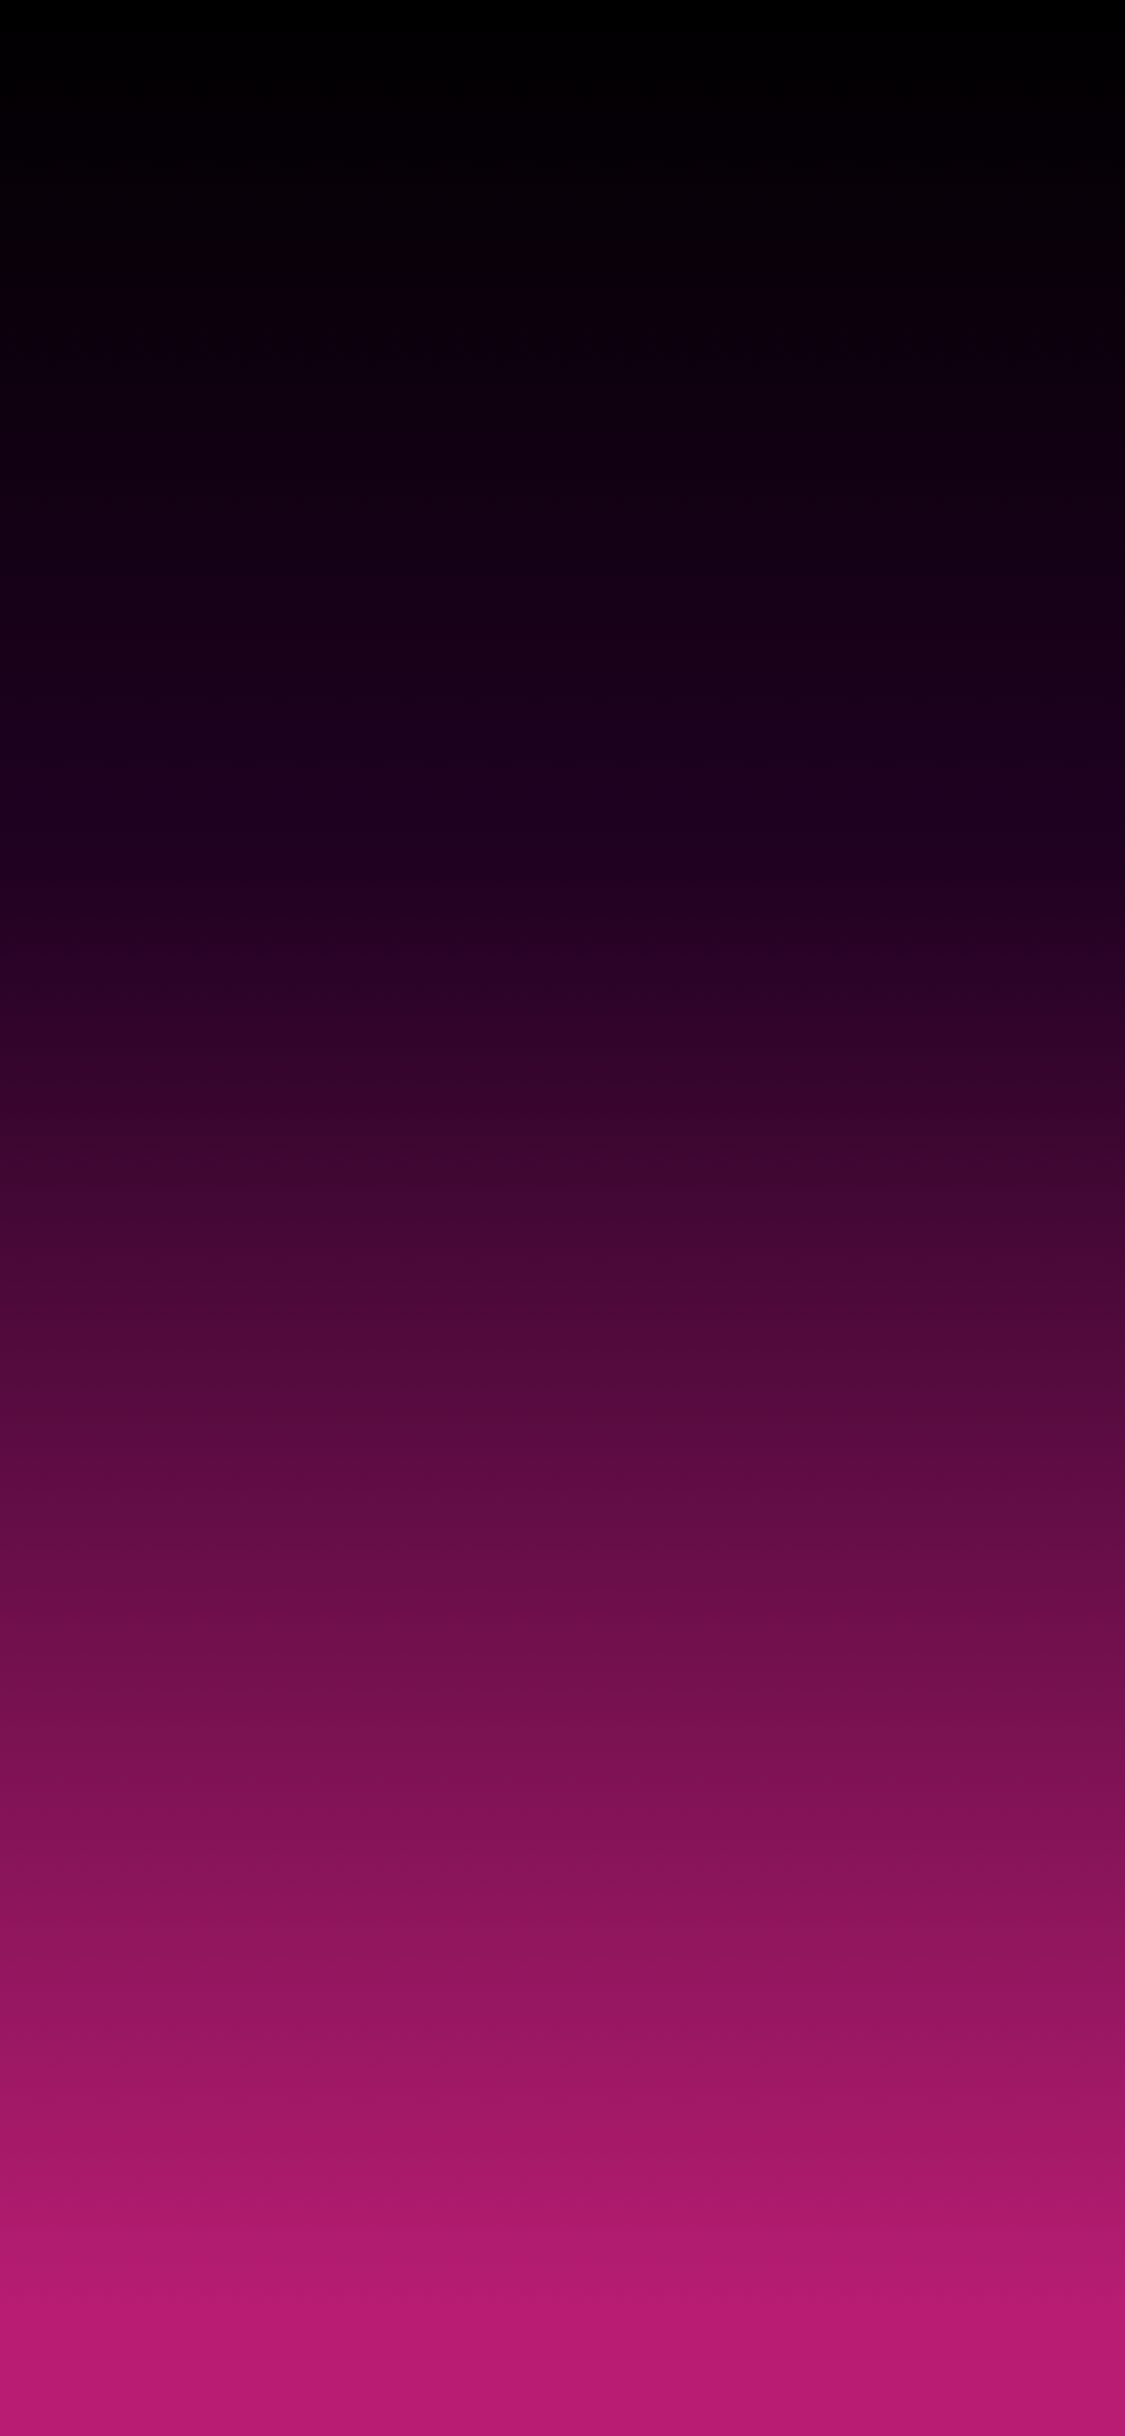 Dark Purple Gradient Iphone Wallpapers